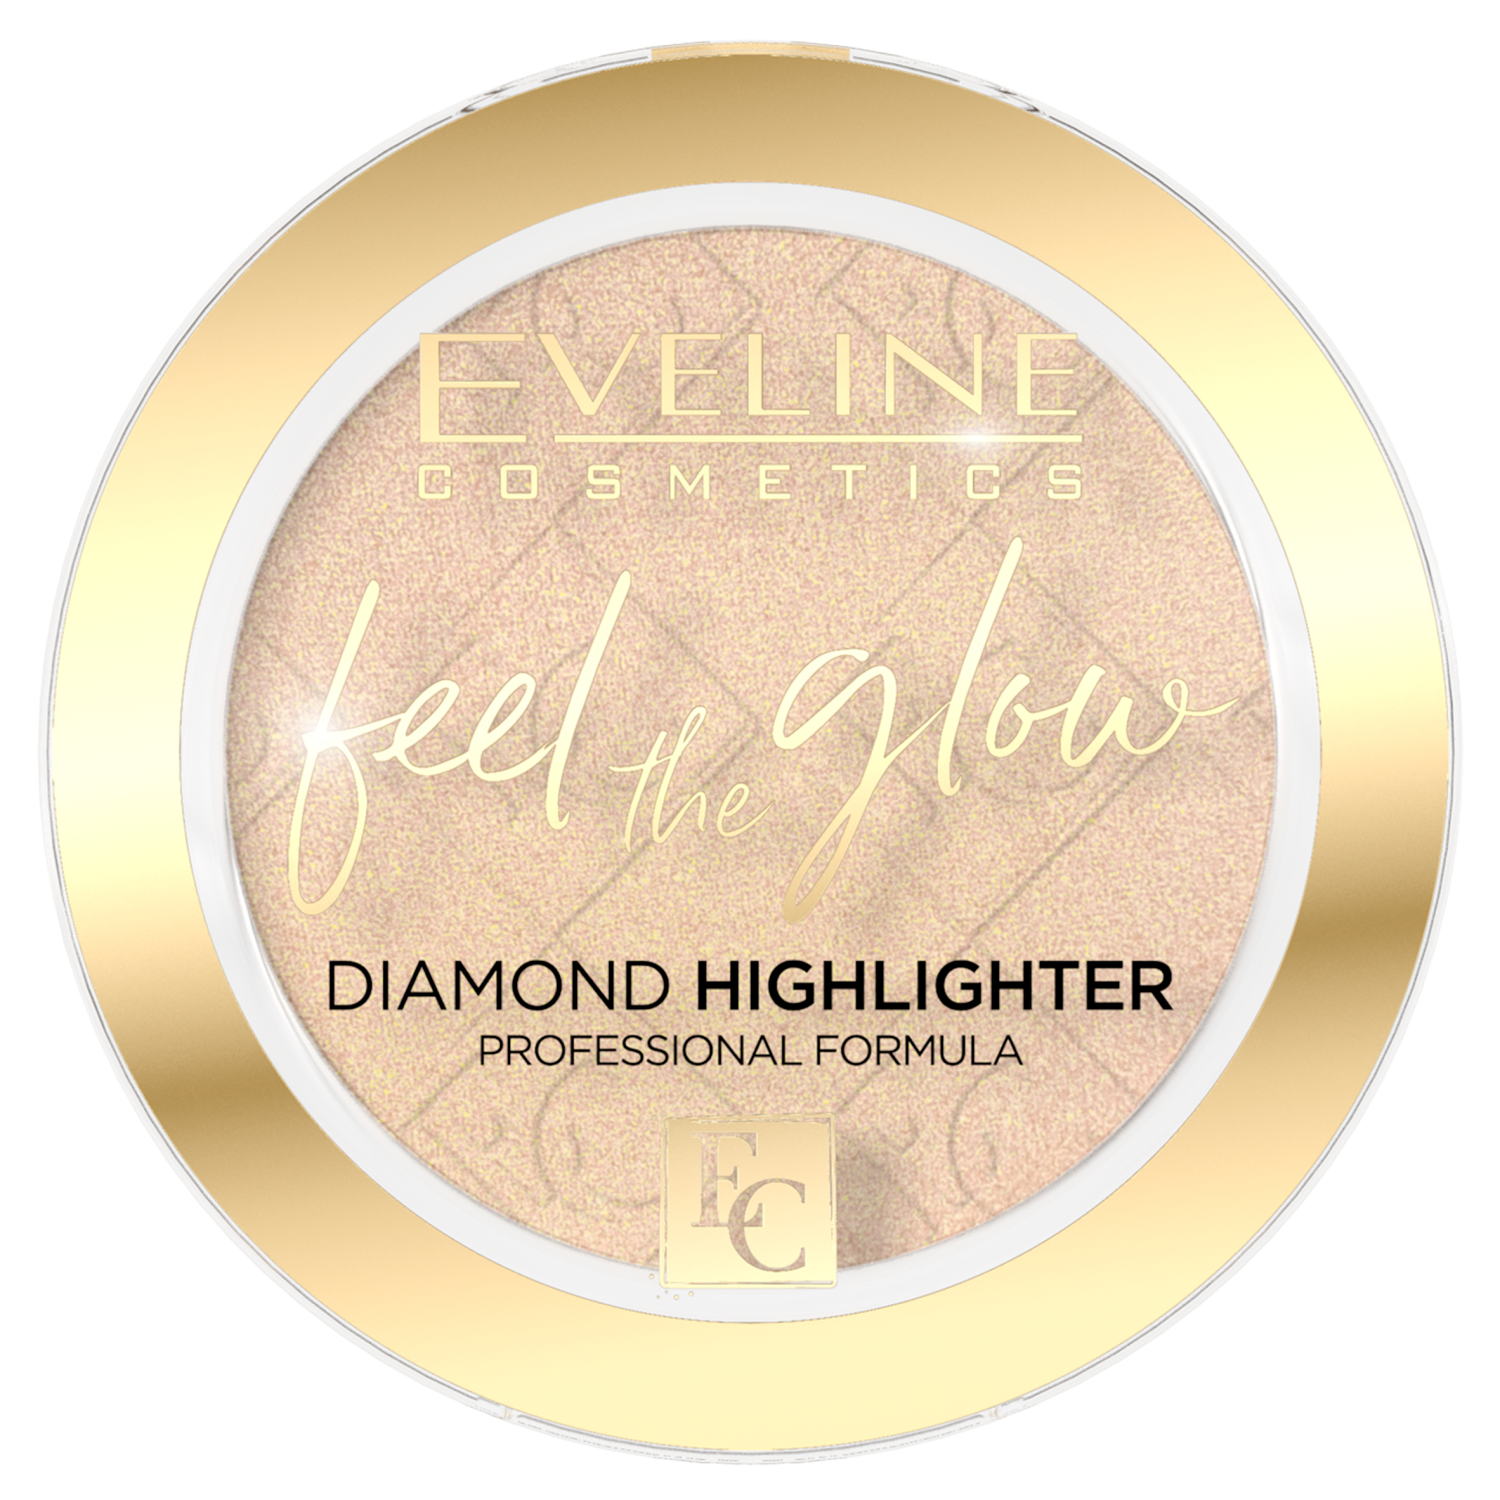 Eveline Cosmetics Feel the Glow rozświetlacz do twarzy 01, 5 g | hebe.pl